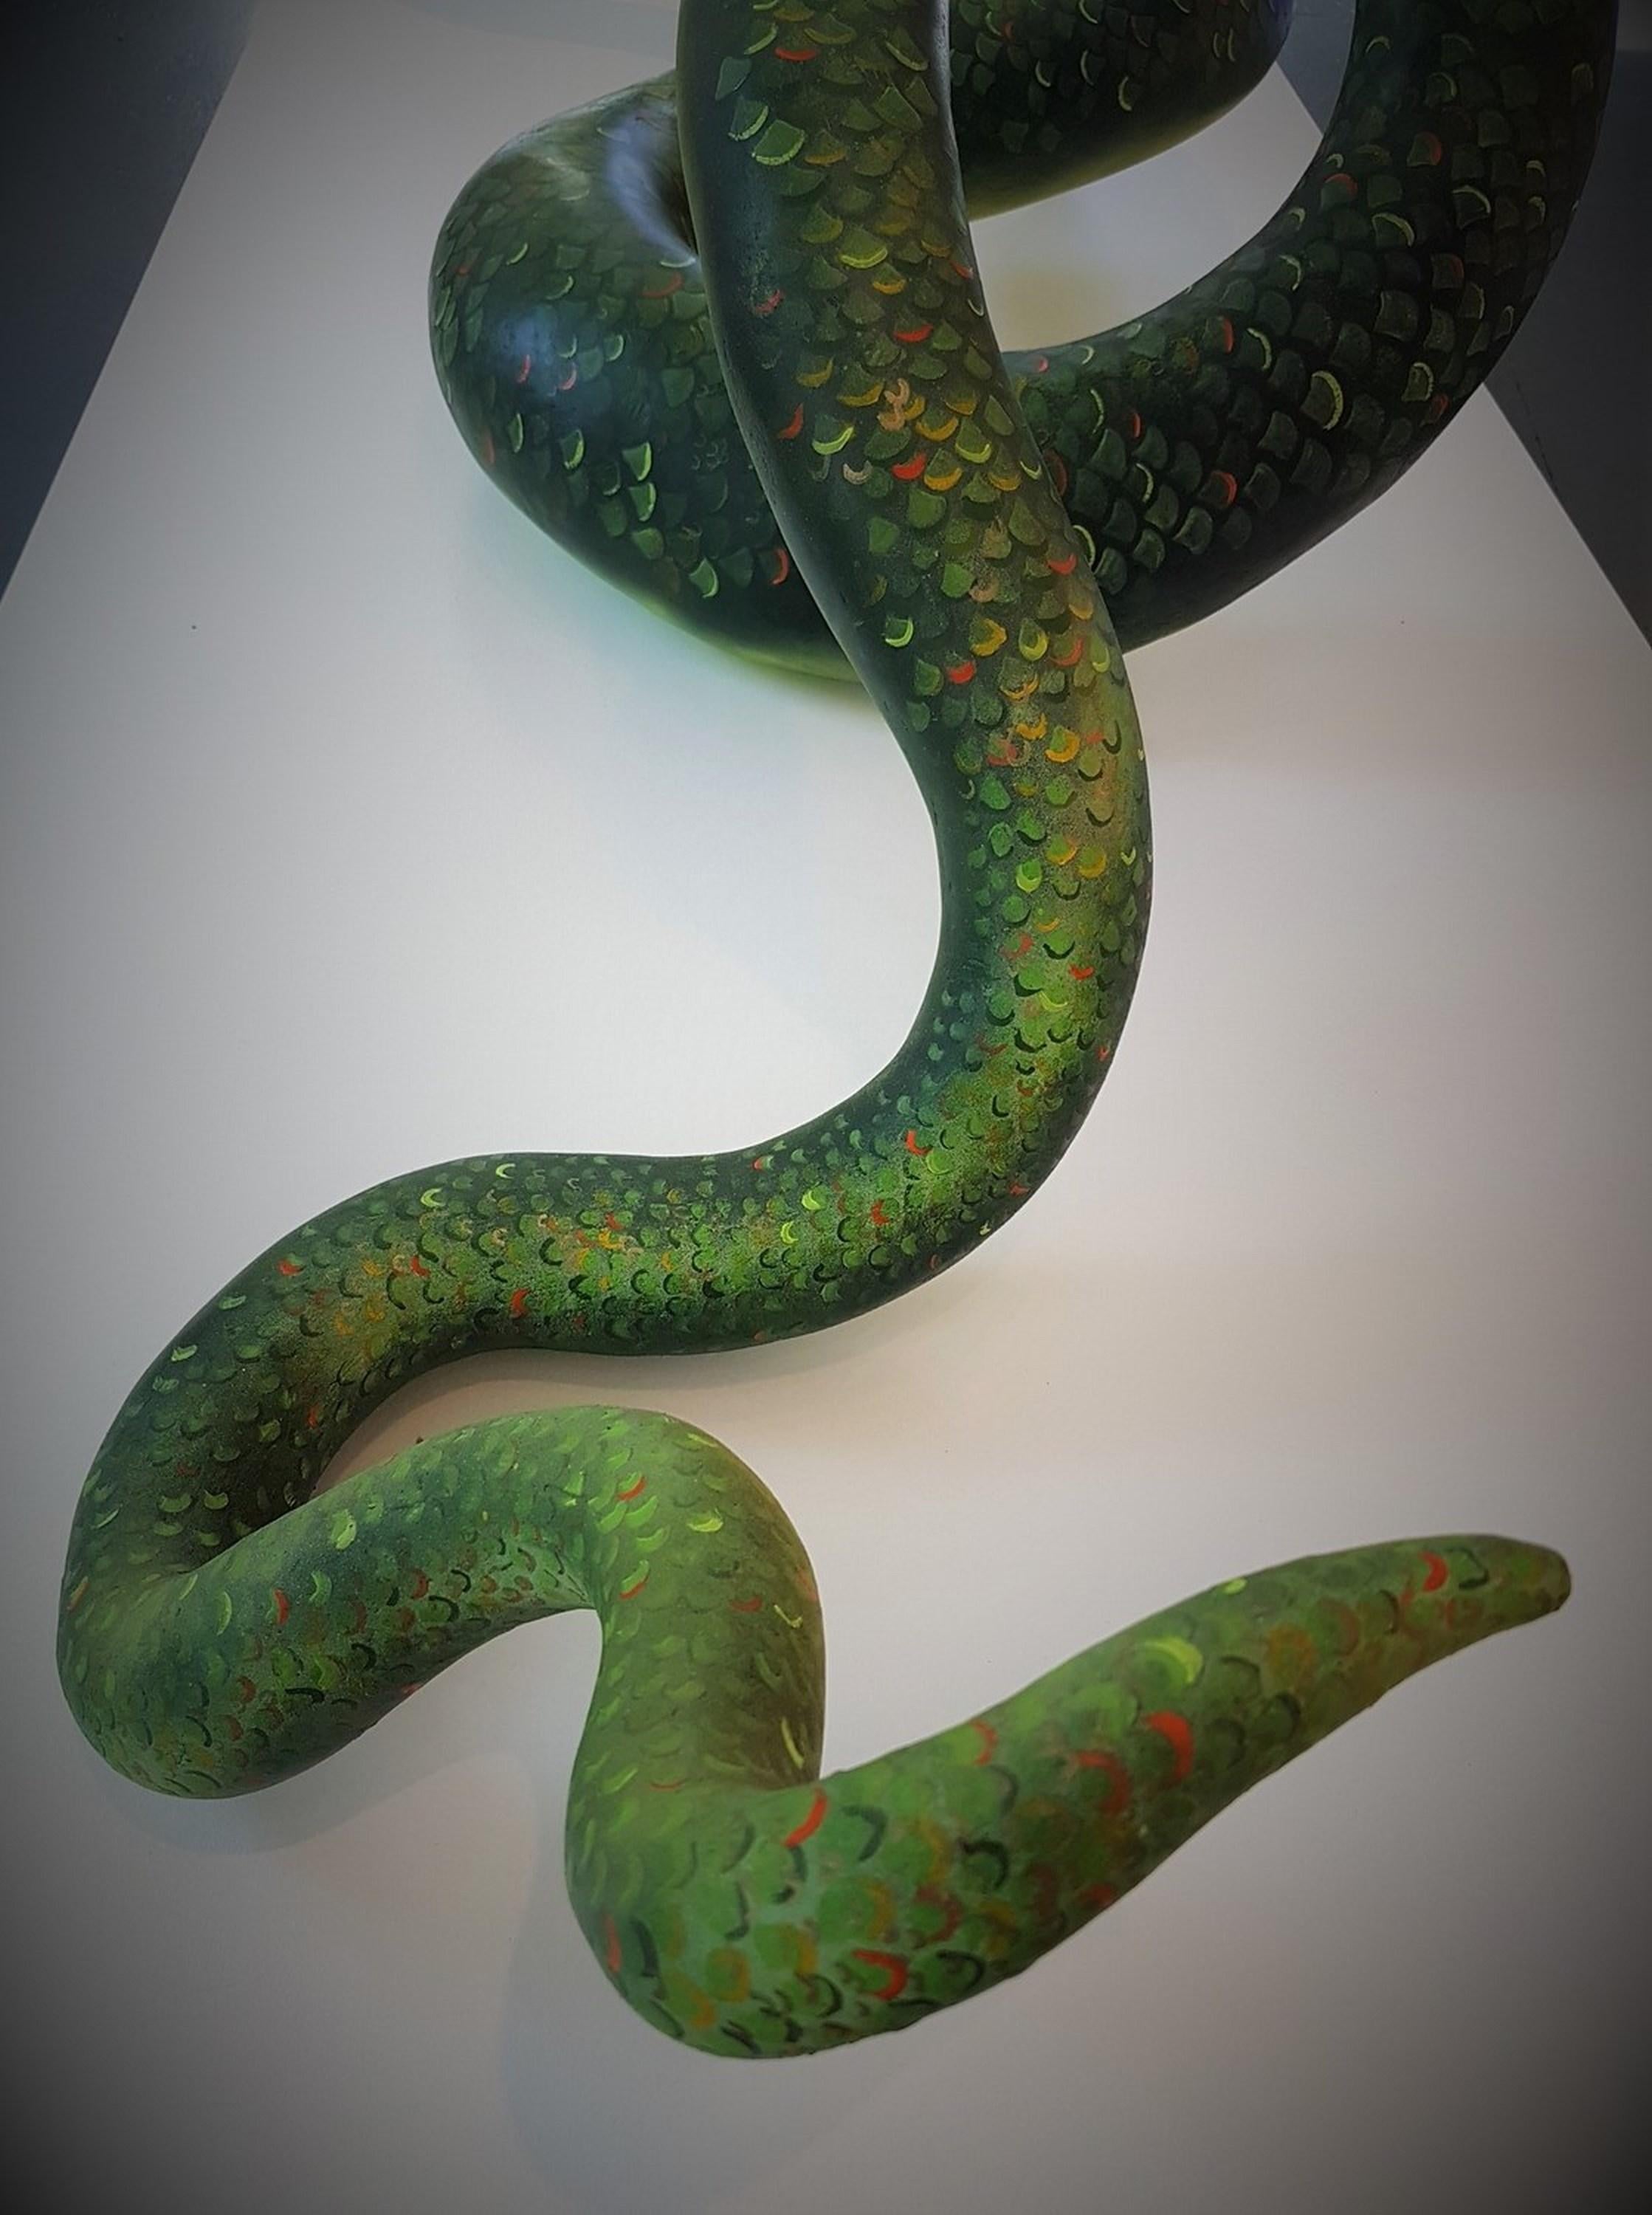 Serpent - Contemporary Sculpture by Ross Redmon